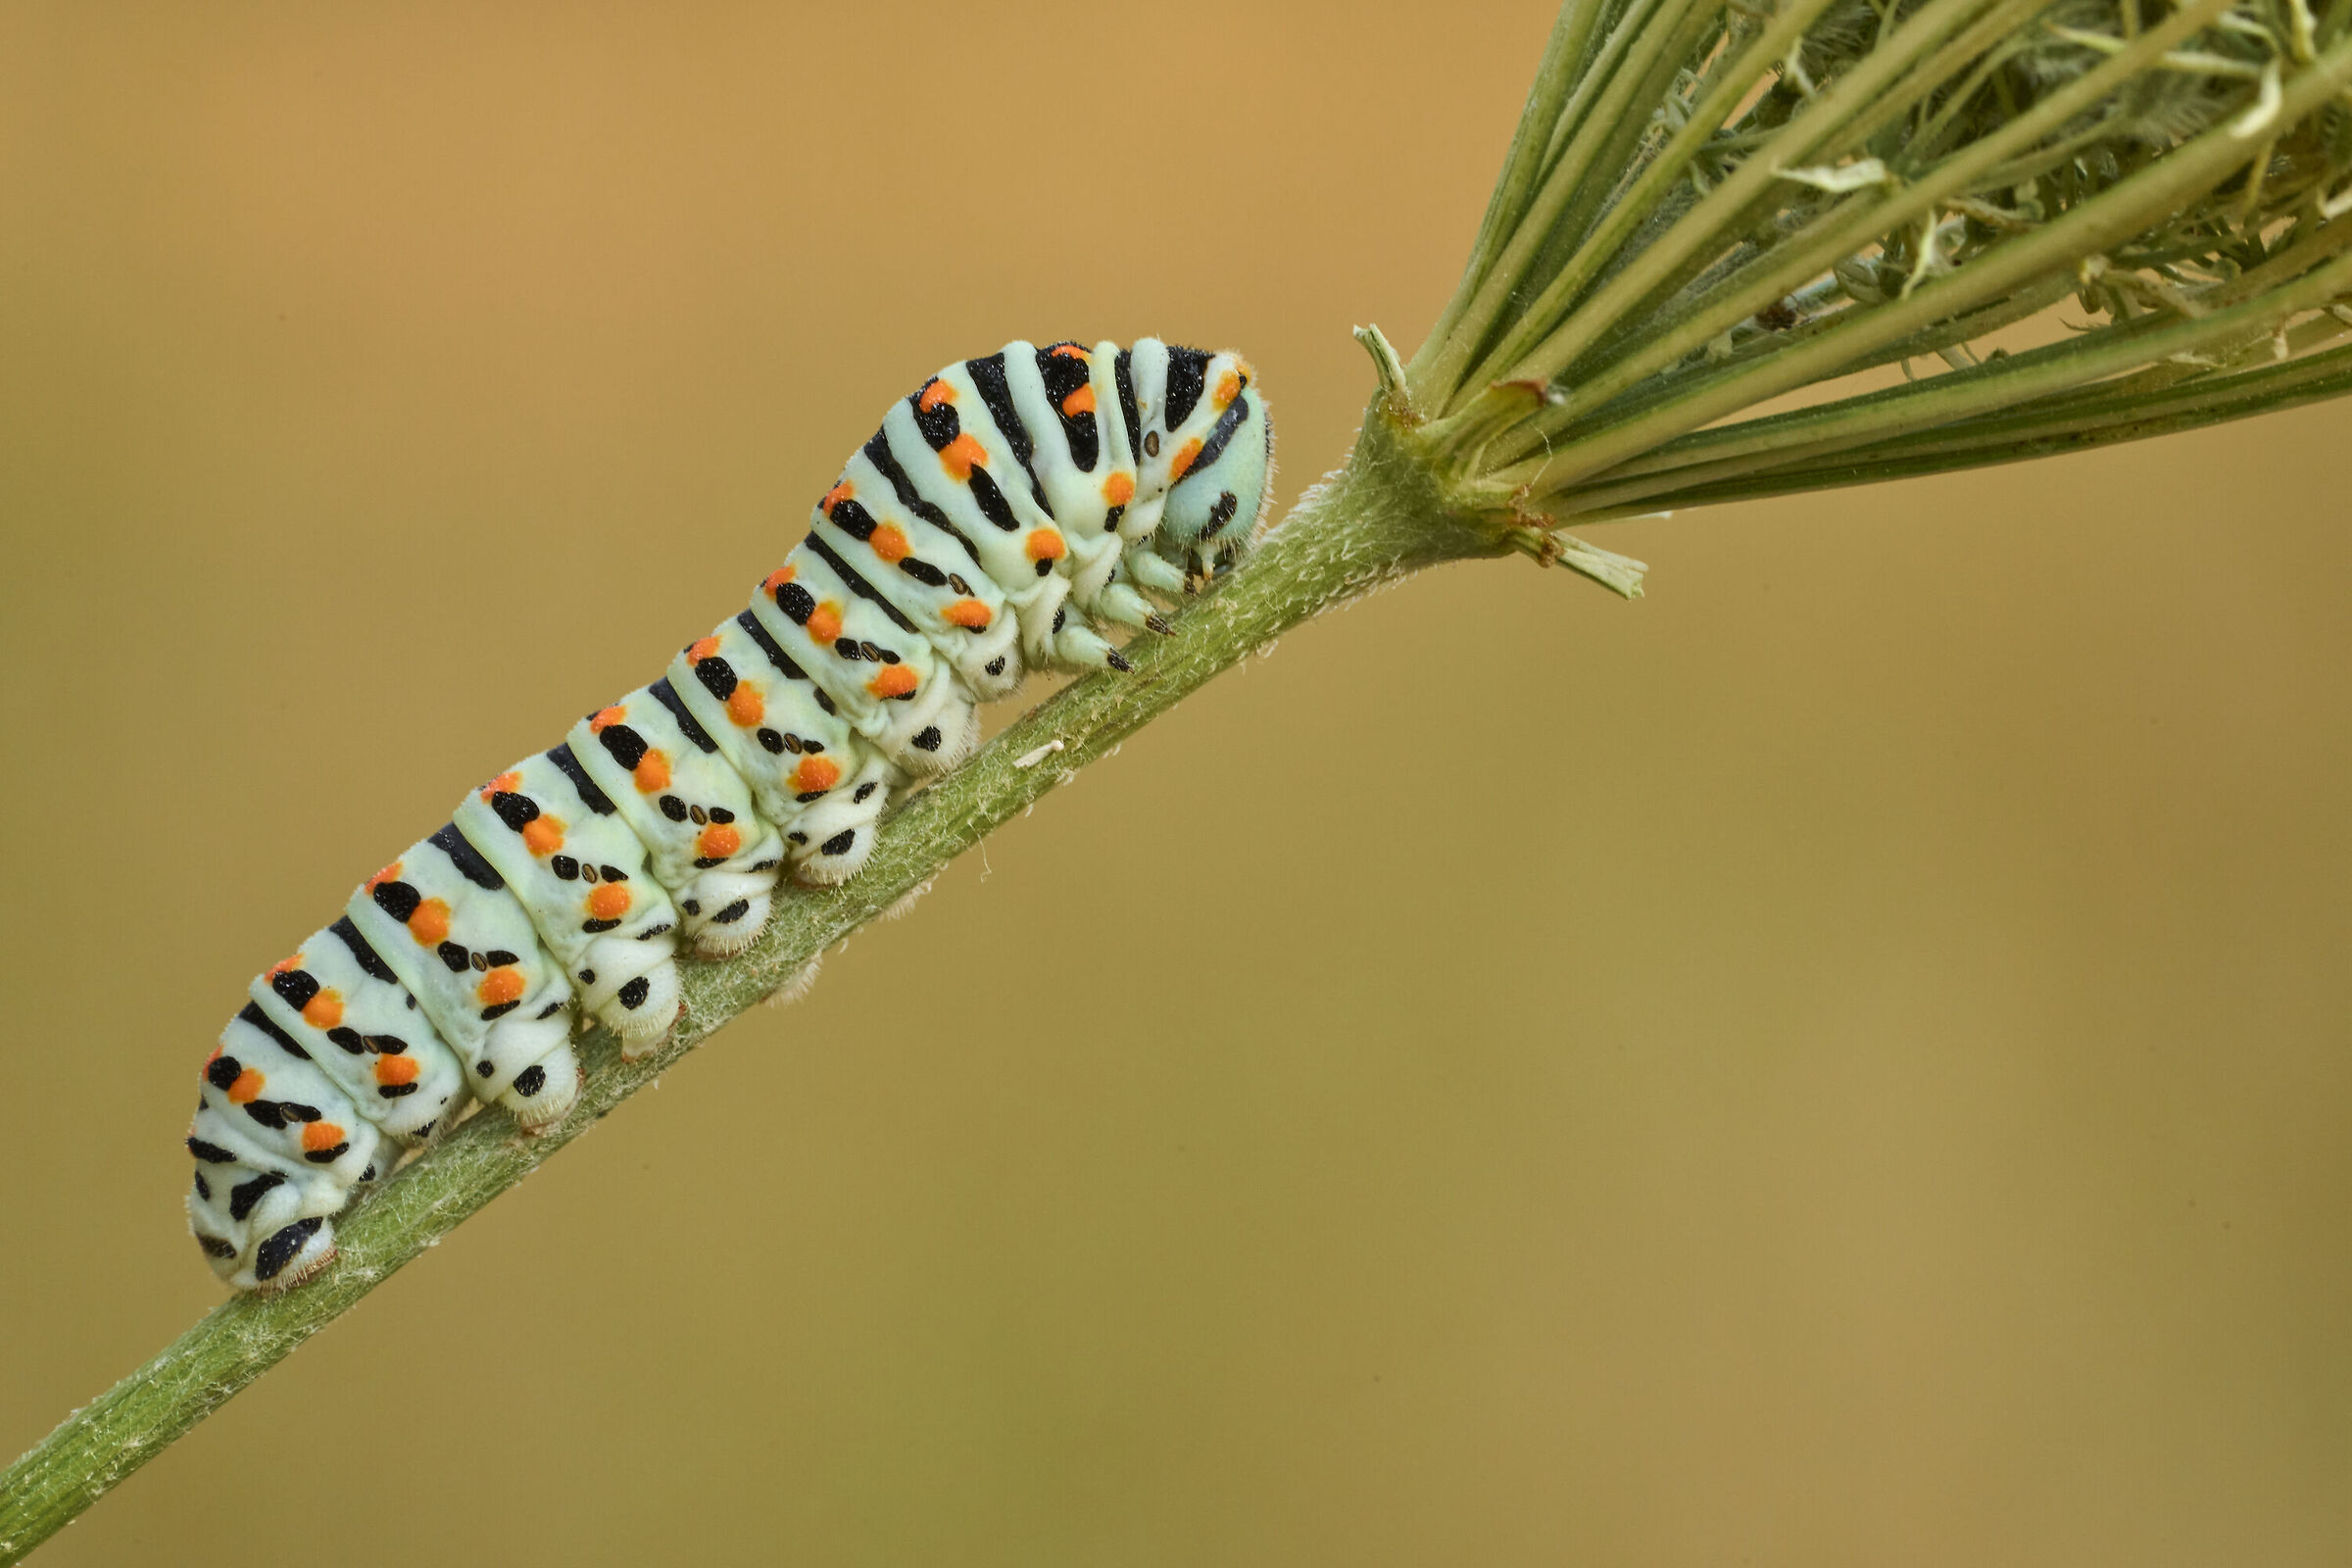 Macaon caterpillar...